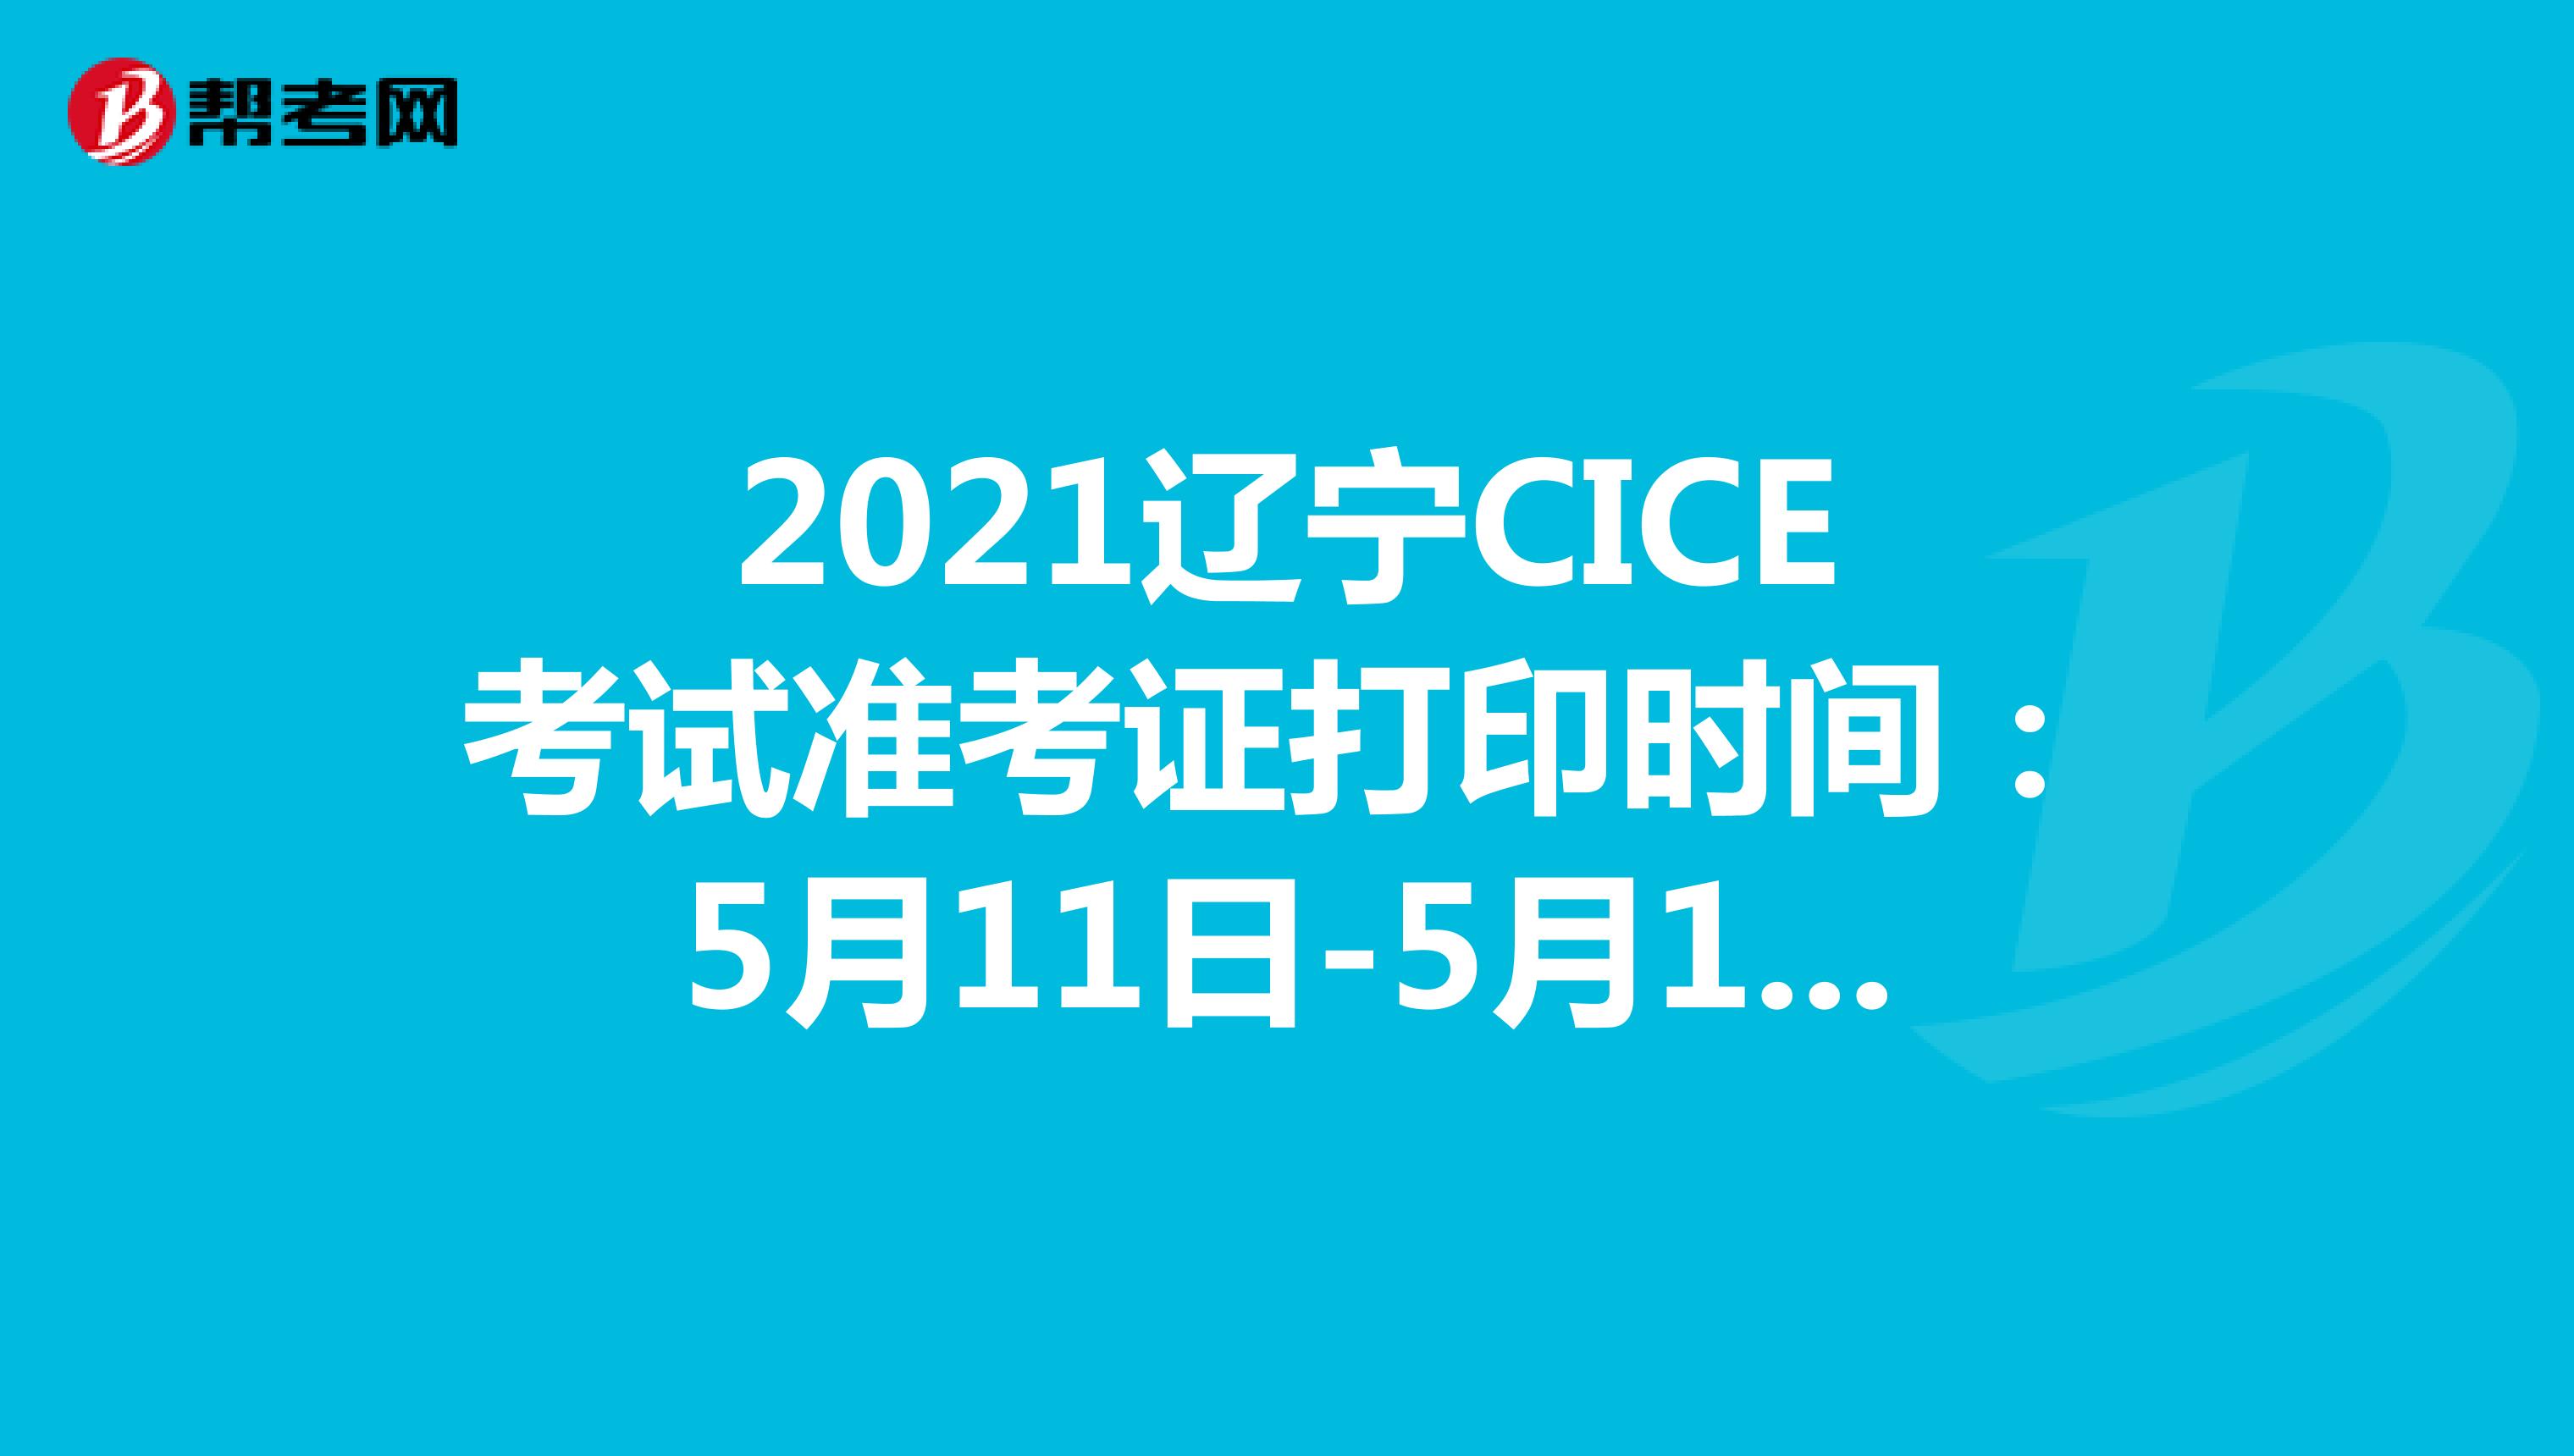 2021辽宁CICE考试准考证打印时间：5月11日-5月14日